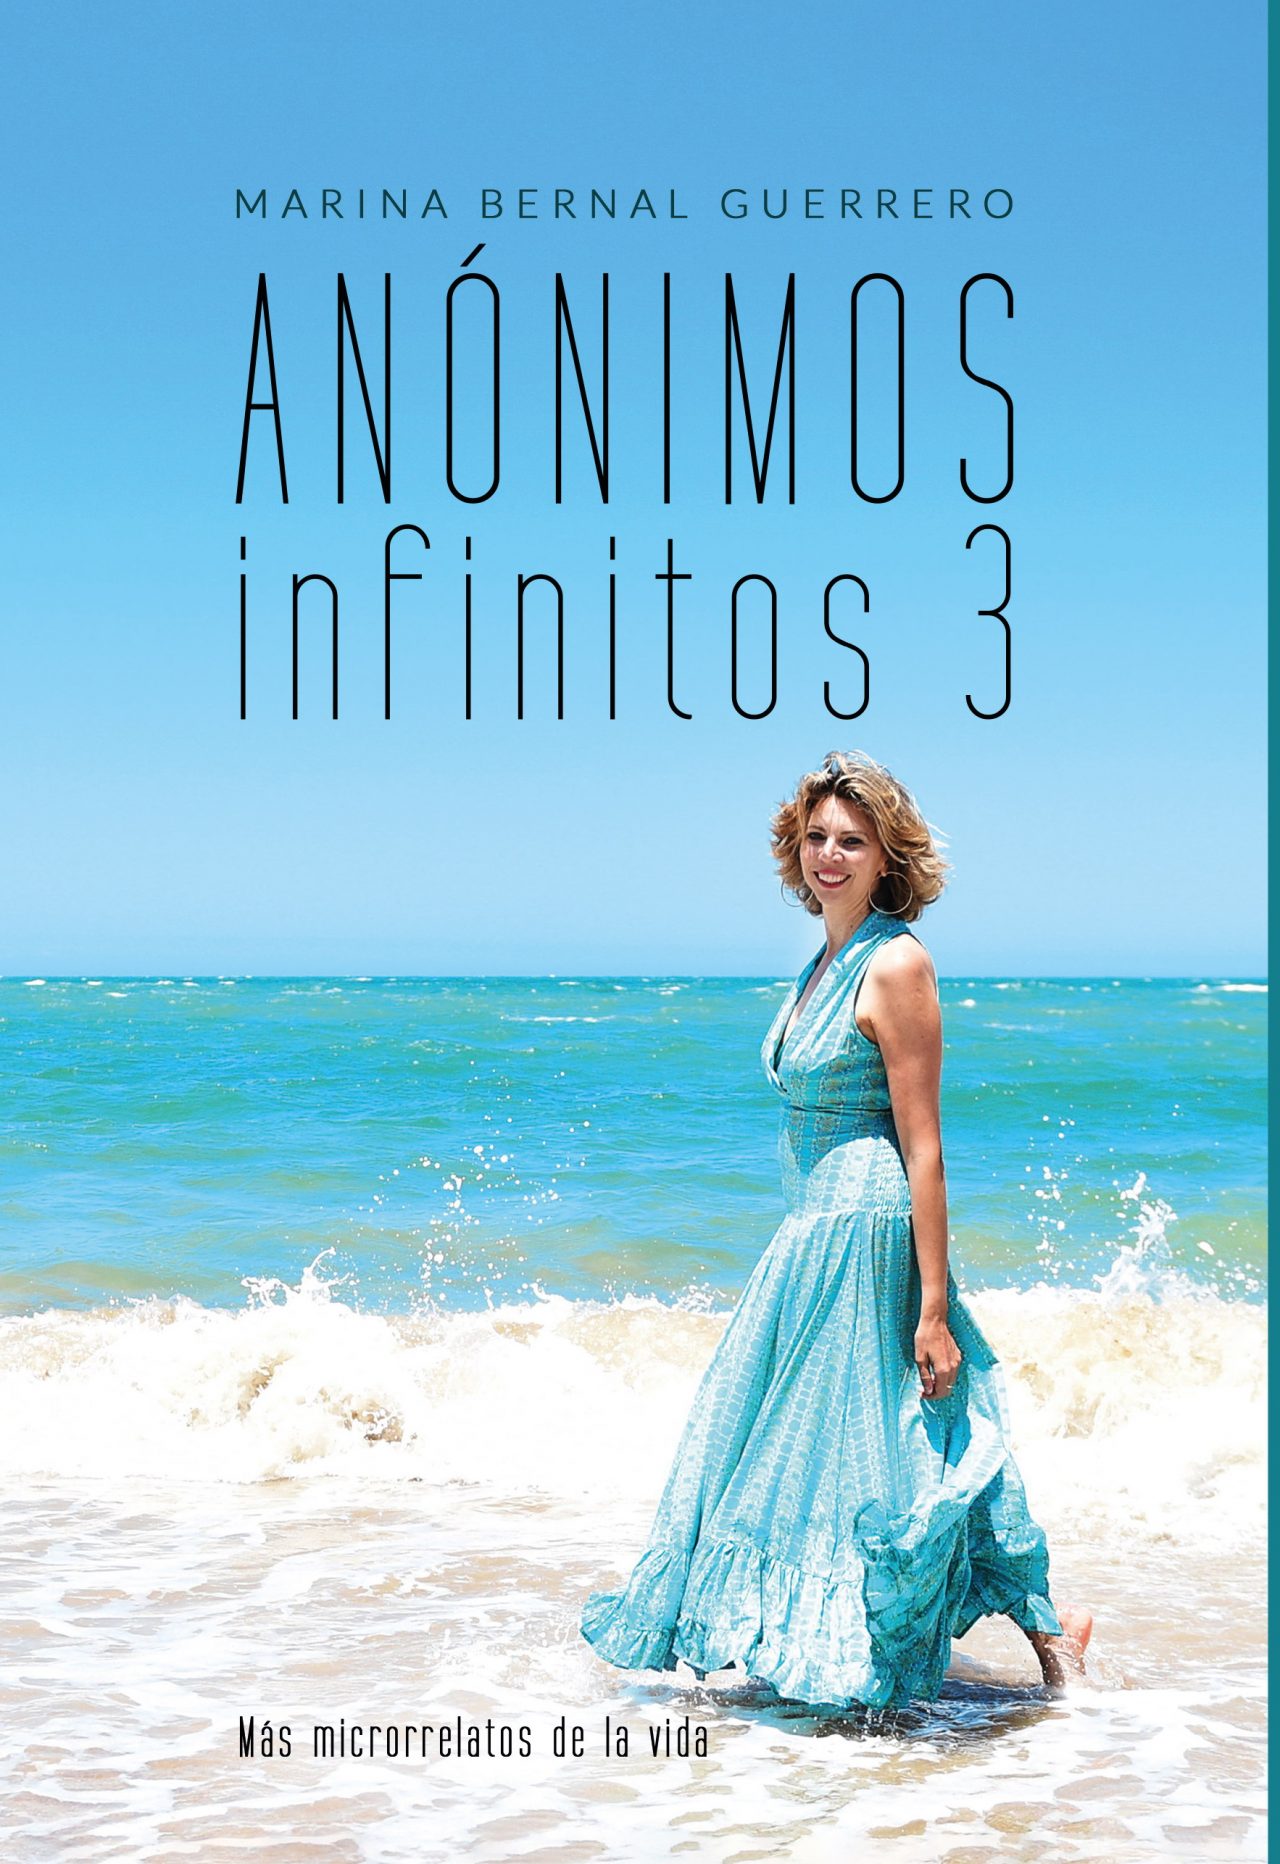 Anonimos-infinitos-3-1-1280x1864.jpg